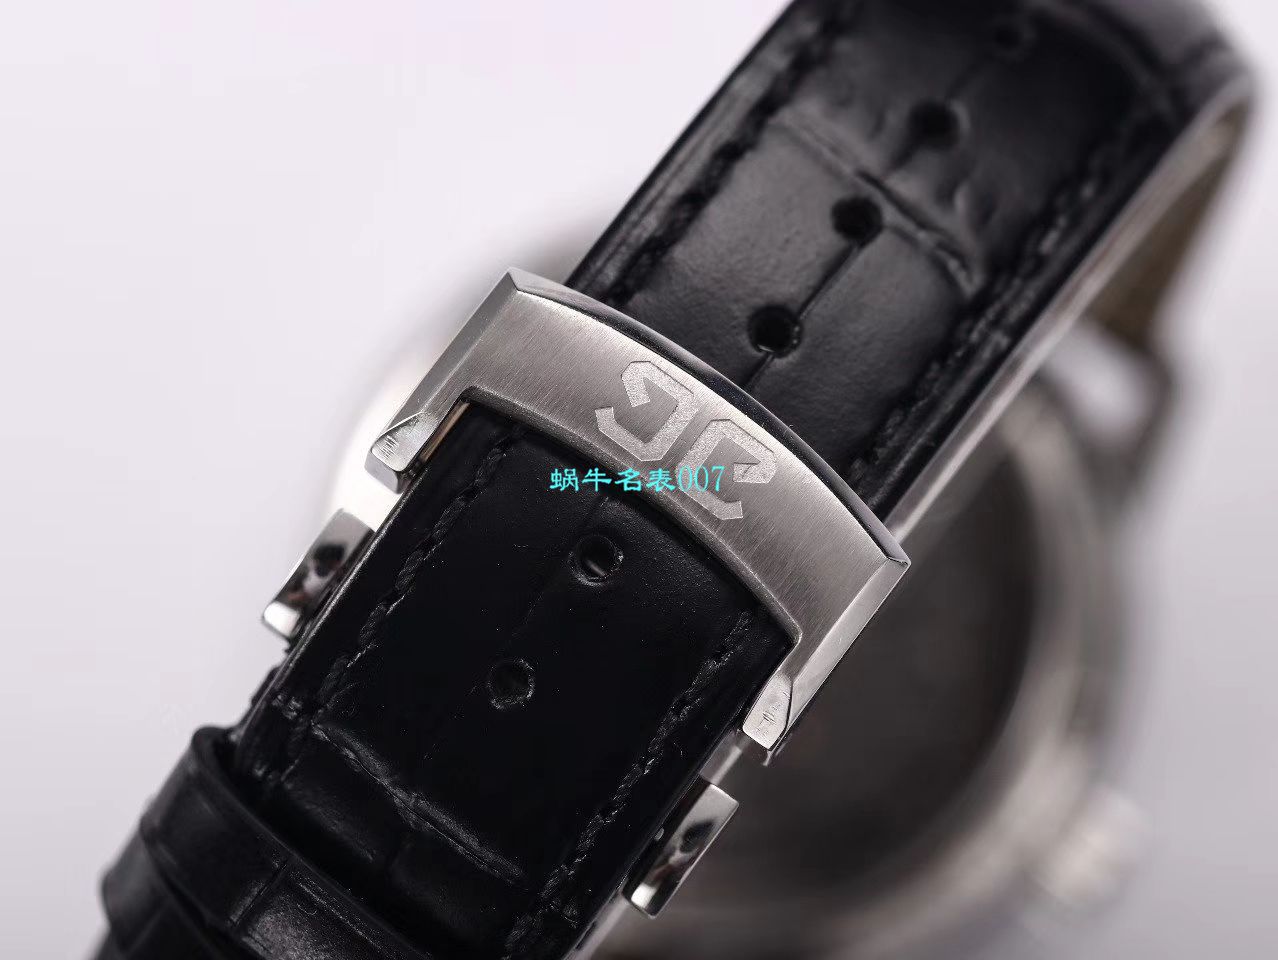 【TZ厂超A精仿手表】格拉苏蒂原创偏心系列1-91-02-01-05-30腕表 / GLA058